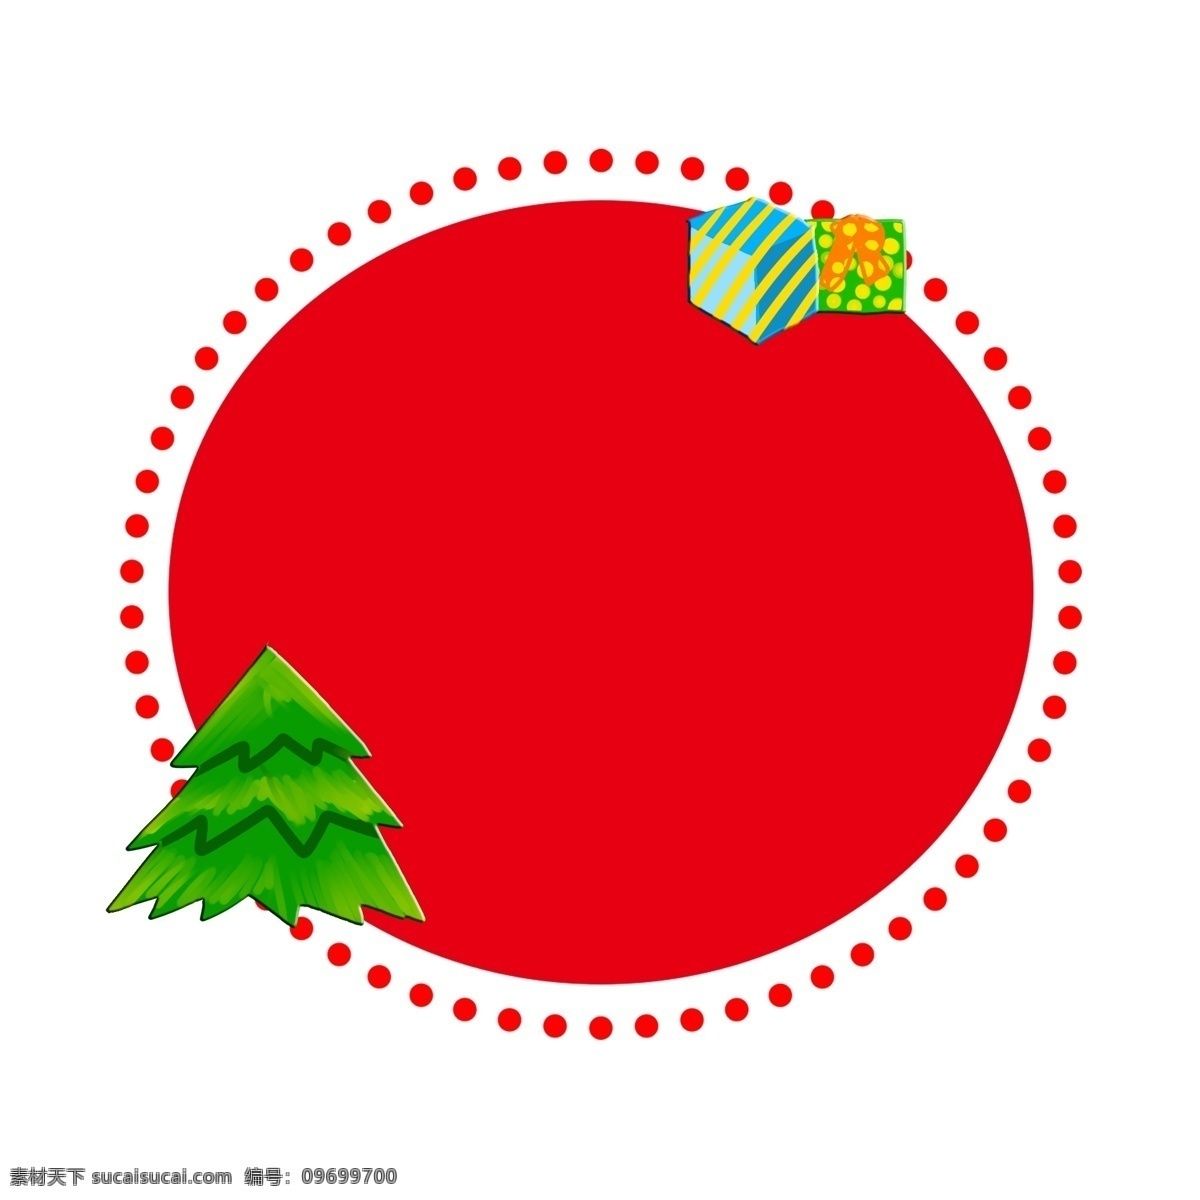 圣诞 圣诞节 夜 装饰 喜庆 新年 礼物 边框 圣诞树 圣诞夜 庆祝 红色圆形边框 圆点装饰边框